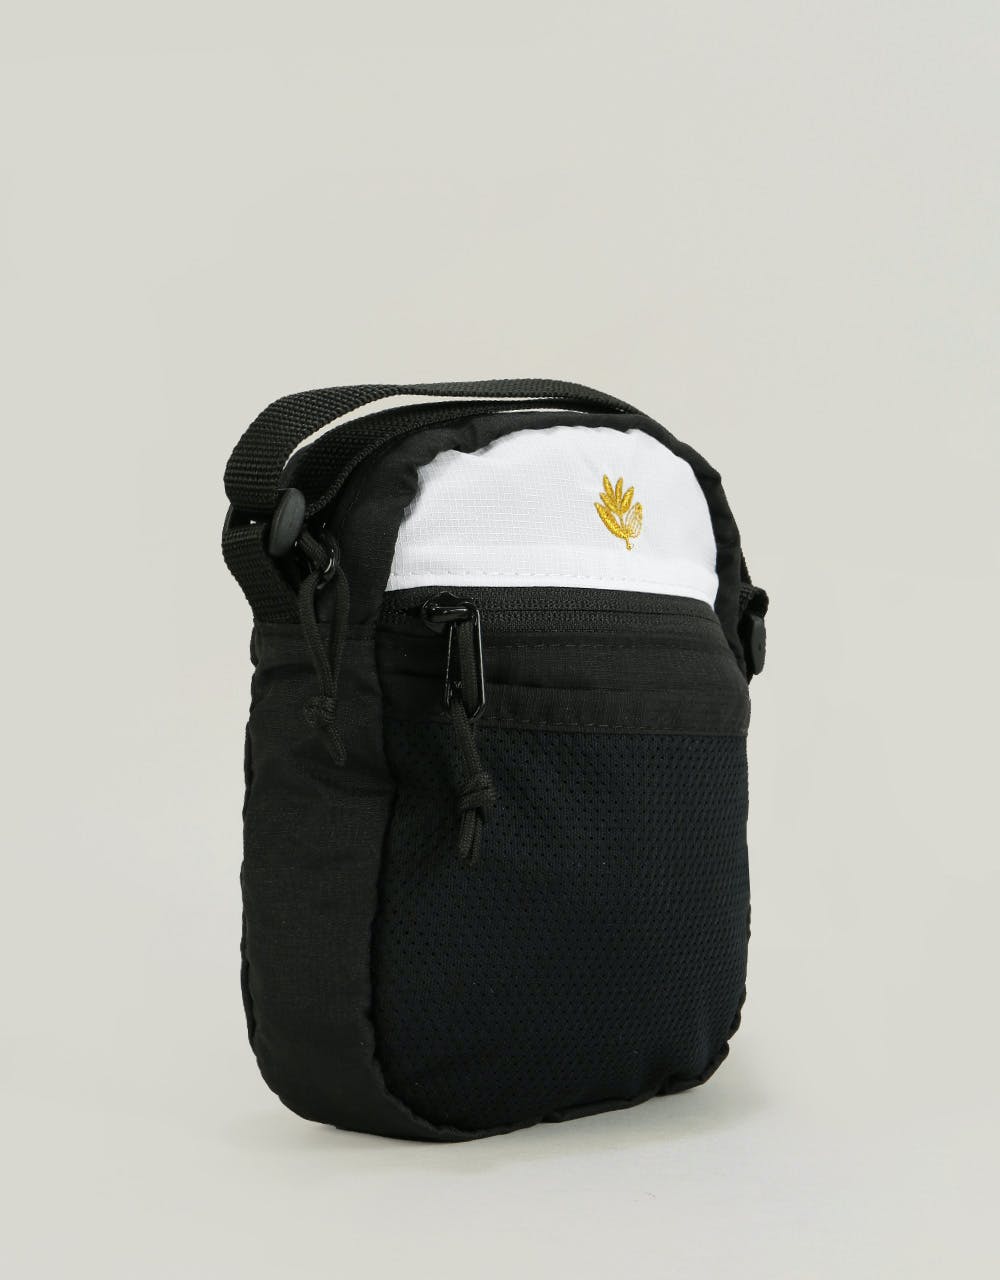 Magenta Sport Cross Body Bag - Black/White